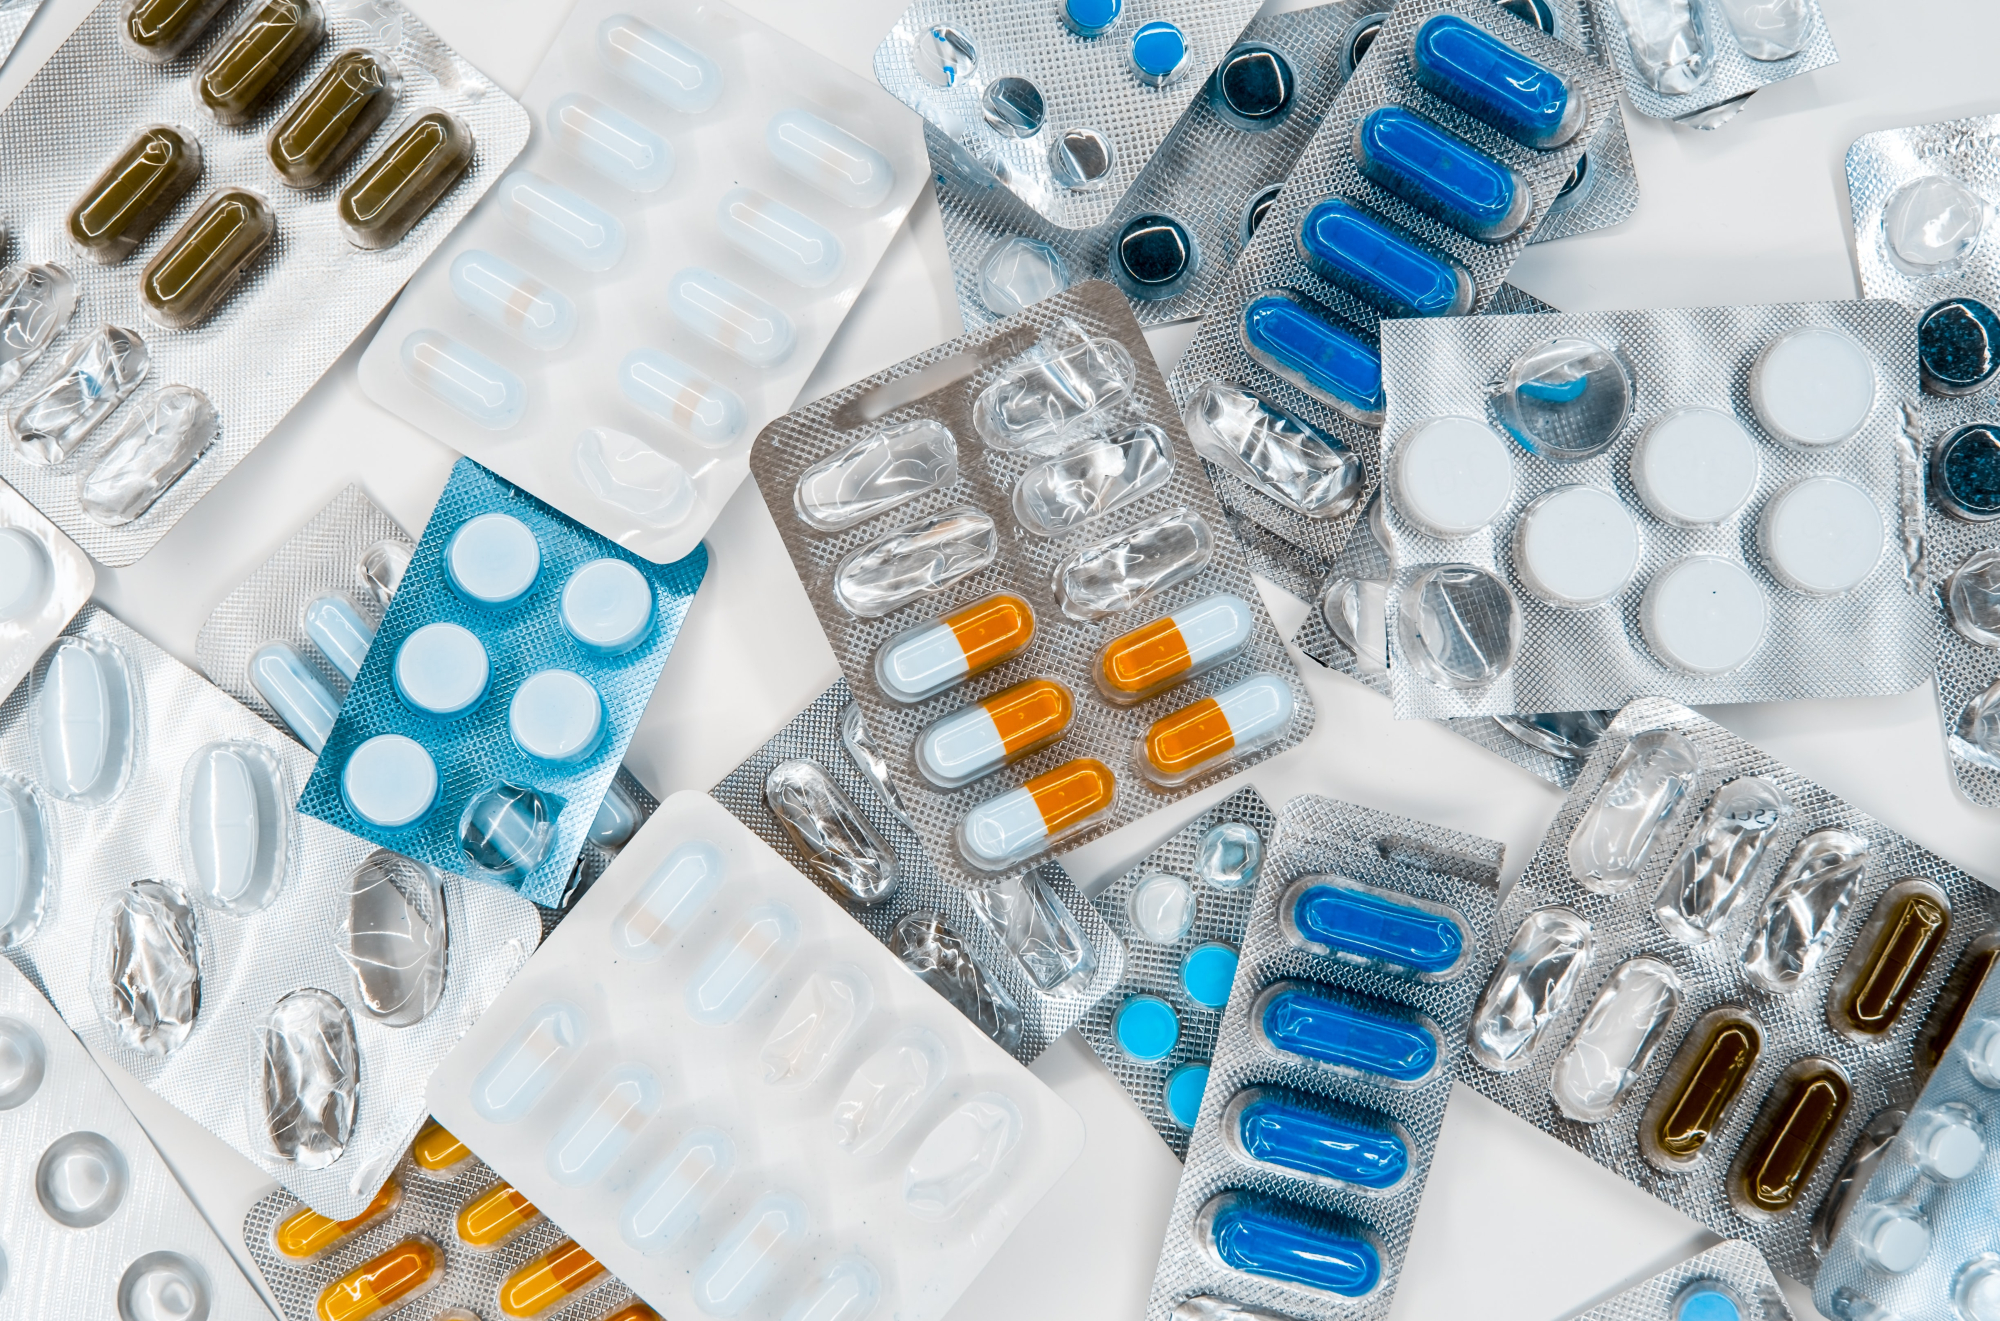 Φάρμακα: Αυτή είναι η λίστα του ΕΟΦ με τα σκευάσματα σε έλλειψη